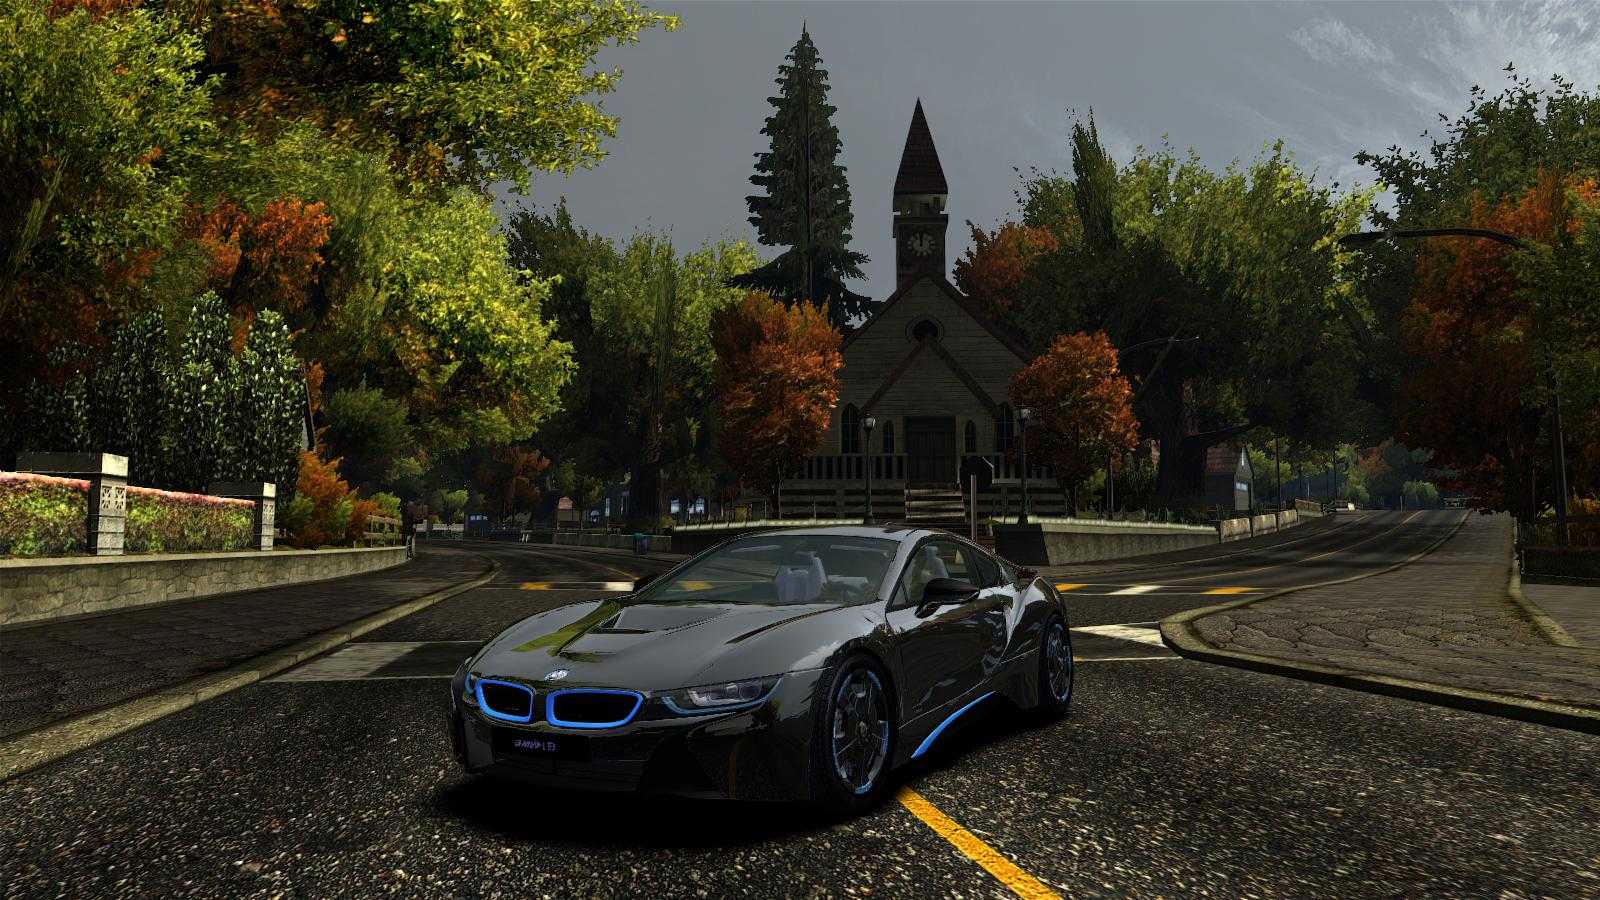 Мод для нфс мост вантед тюнинг Патчи, программы и новые автомобили для серии игр Need For Speed Самый большой архив файлов для NFS на wwwnfskoru